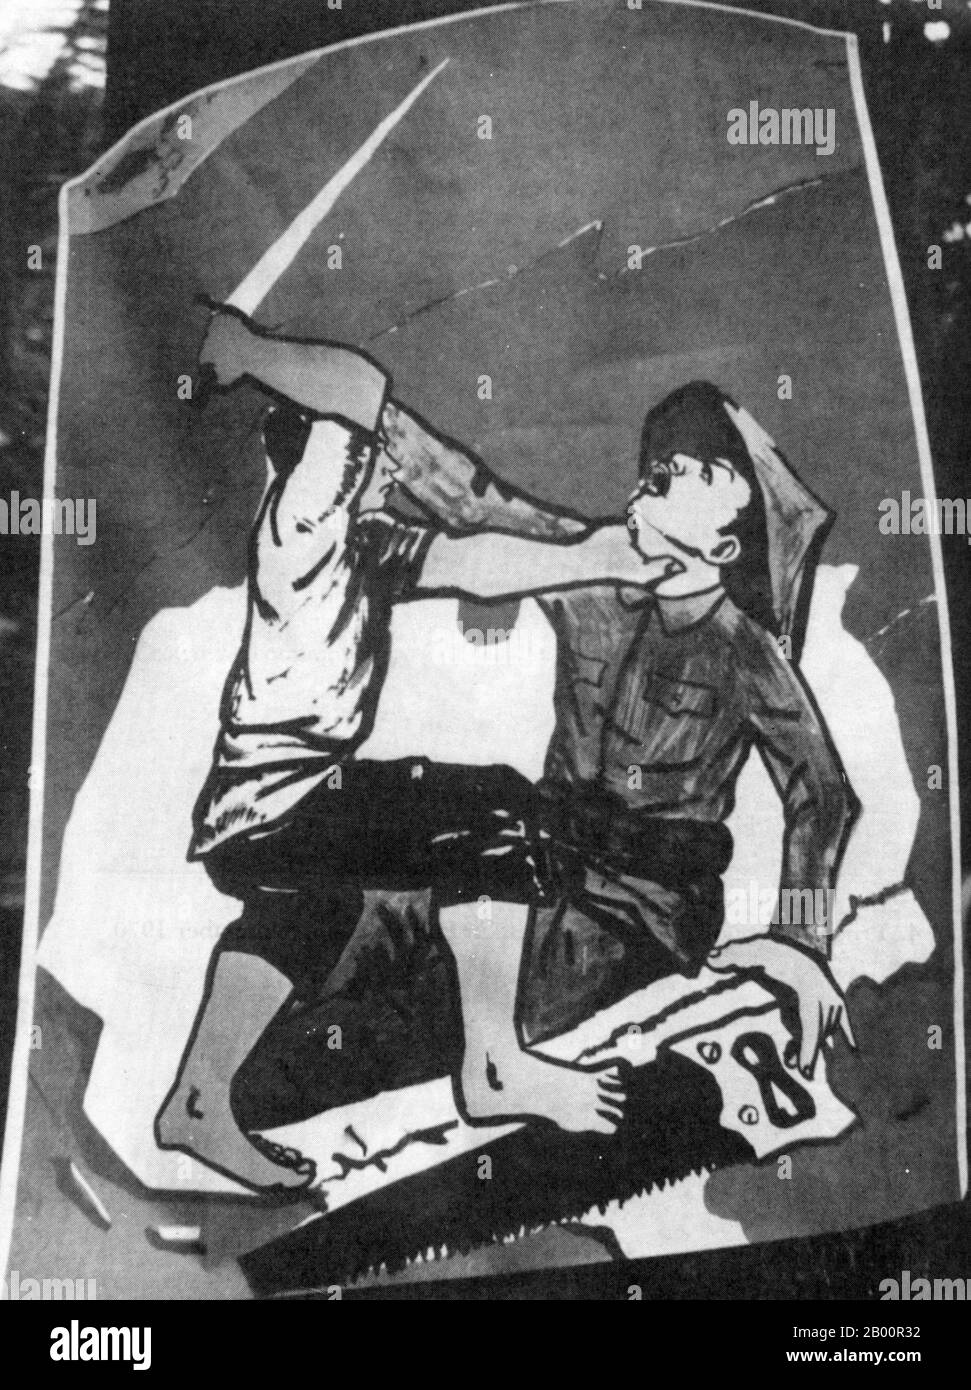 Cambogia: Un manifesto anti-vietnamita di strada dall'era Lon Nol (1970-1975). Il poster mostra un patriota khmer che attacca un vietnamita che ha tentato di vedere fuori del territorio nazionale cambogiano nel sud e nell'est. Foto Stock